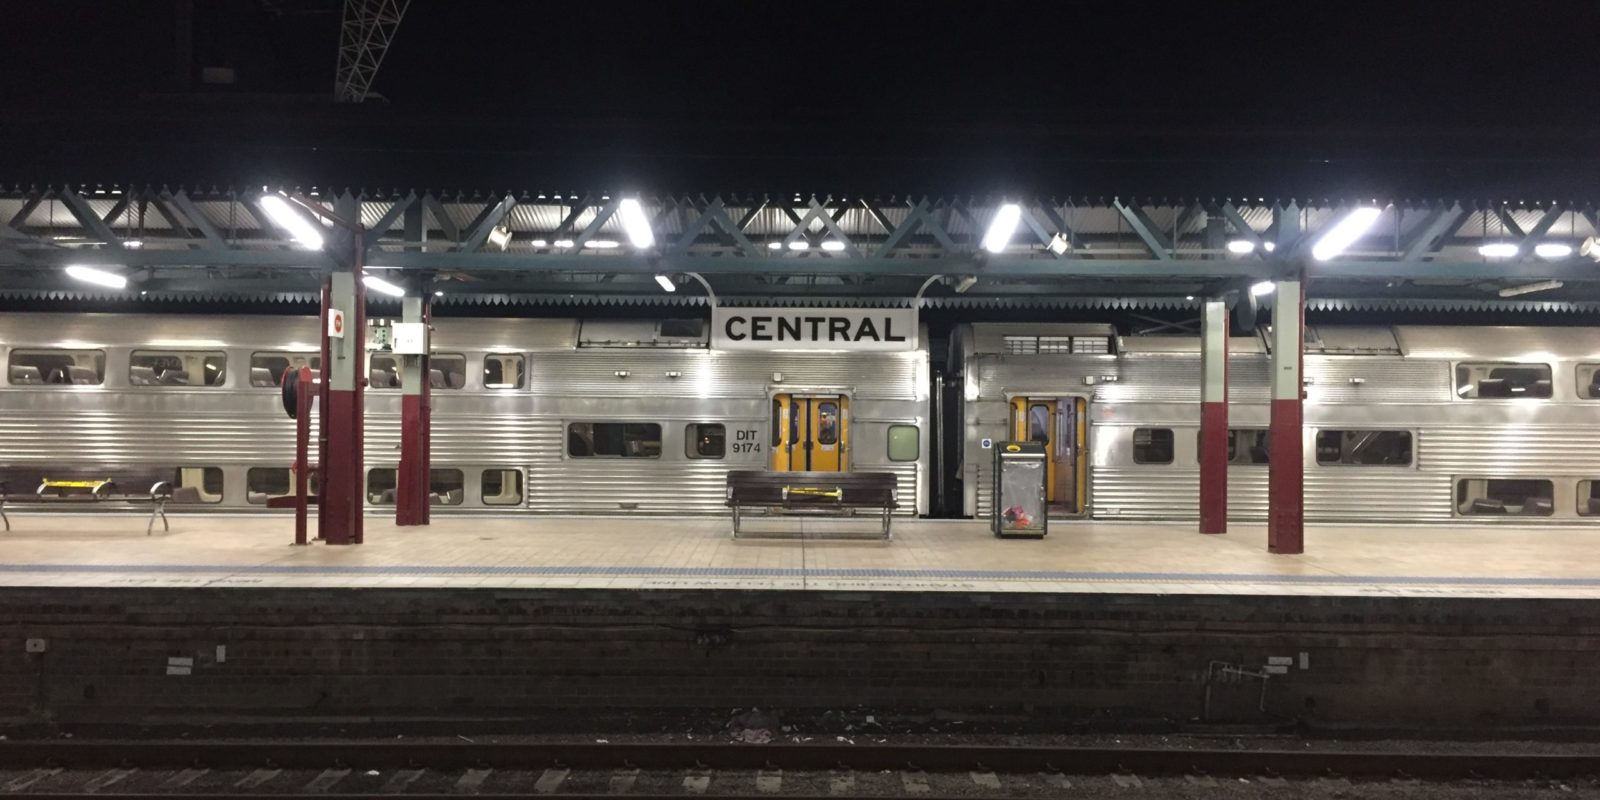 Central Station's platform